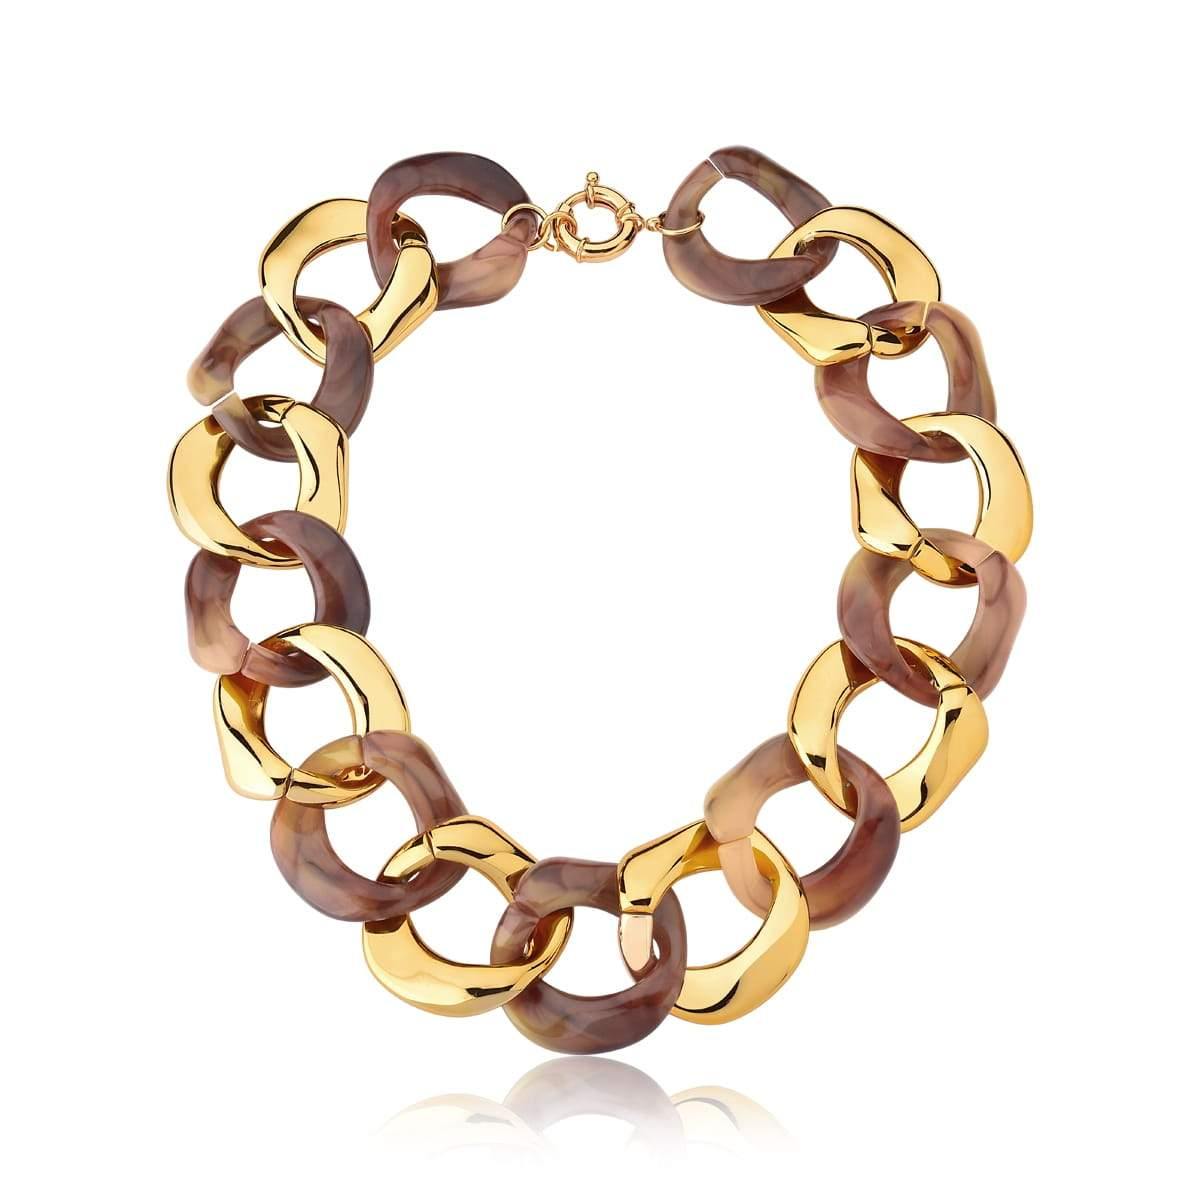 Colar com Elos Groumet Marrom e Dourado - Citrine Concept Jewelry